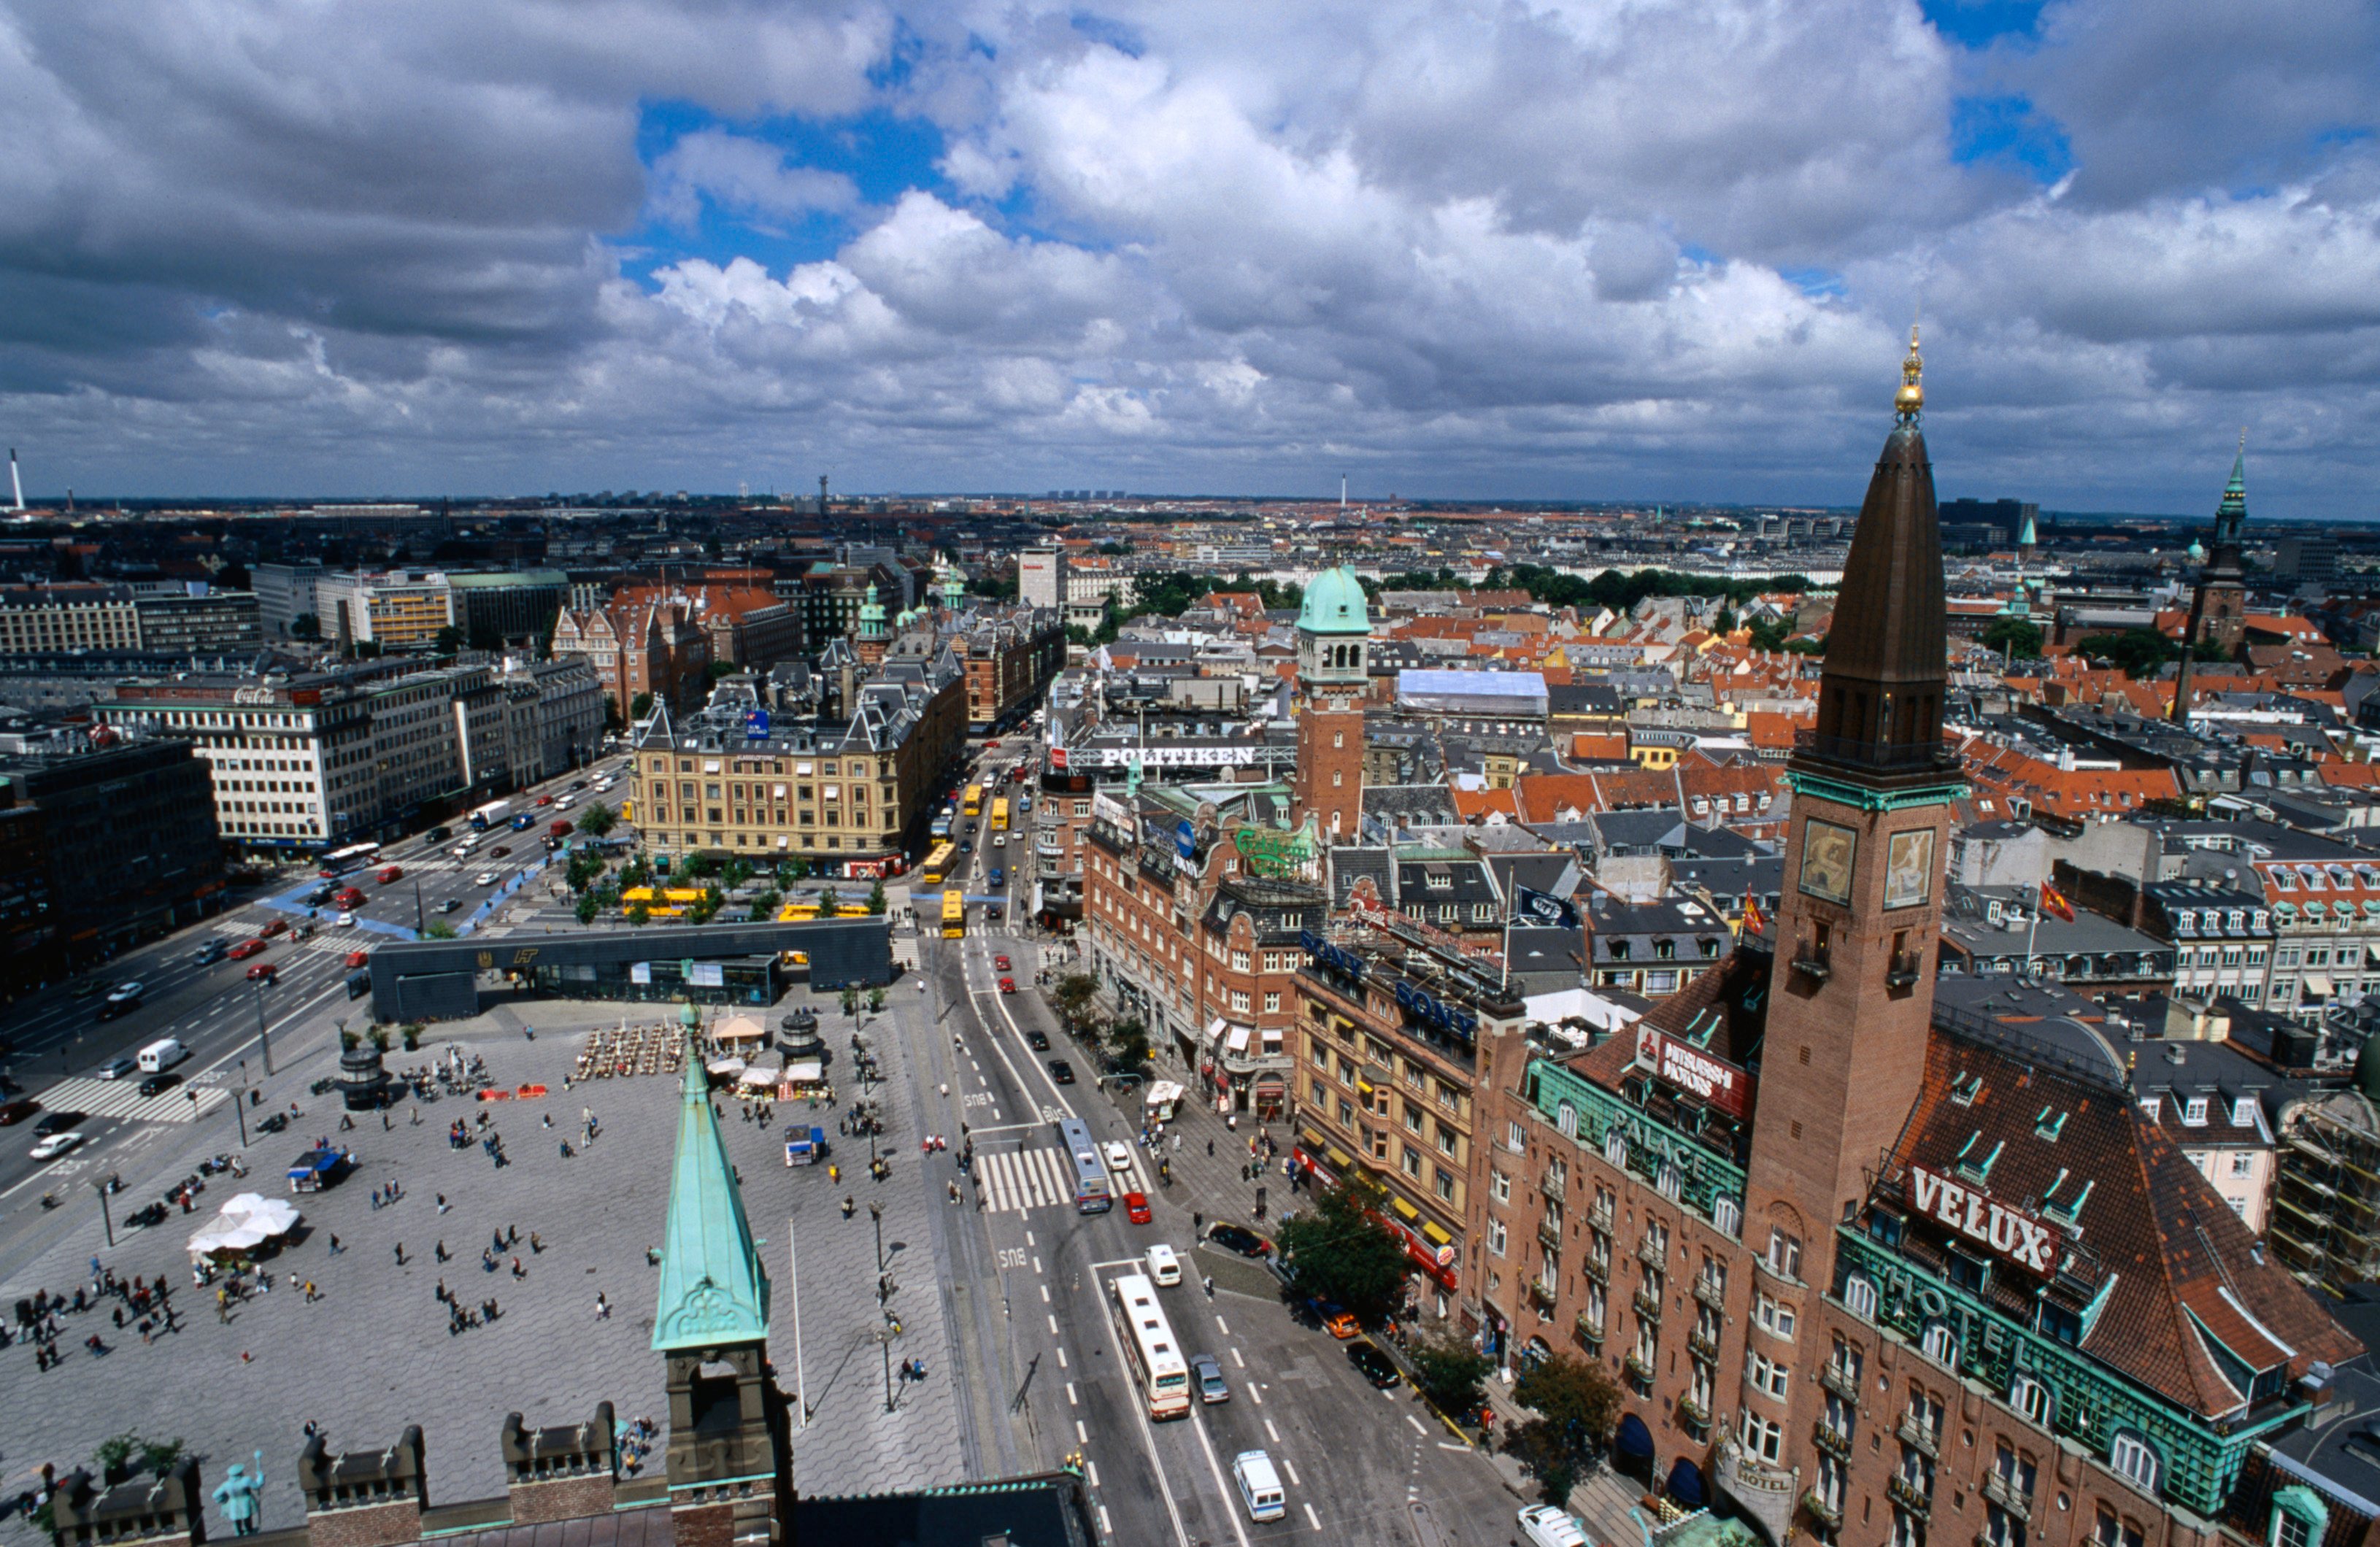 Índex das cidades com custo de vida mais elevado - Copenhaga